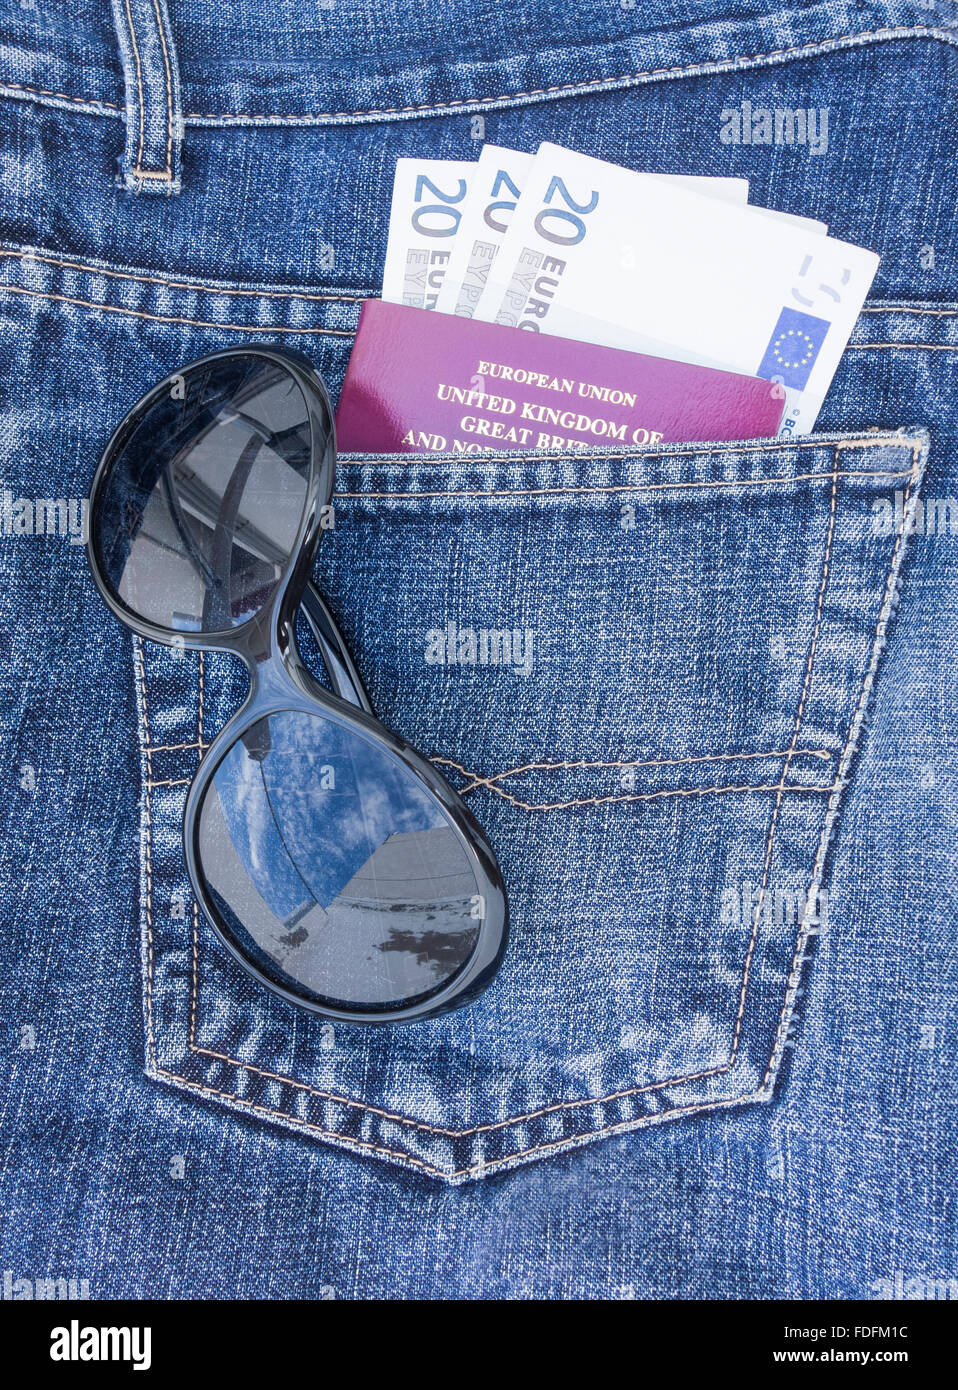 Passeport, billets et des lunettes de soleil dans une poche arrière de jeans. Concept de voyage Banque D'Images